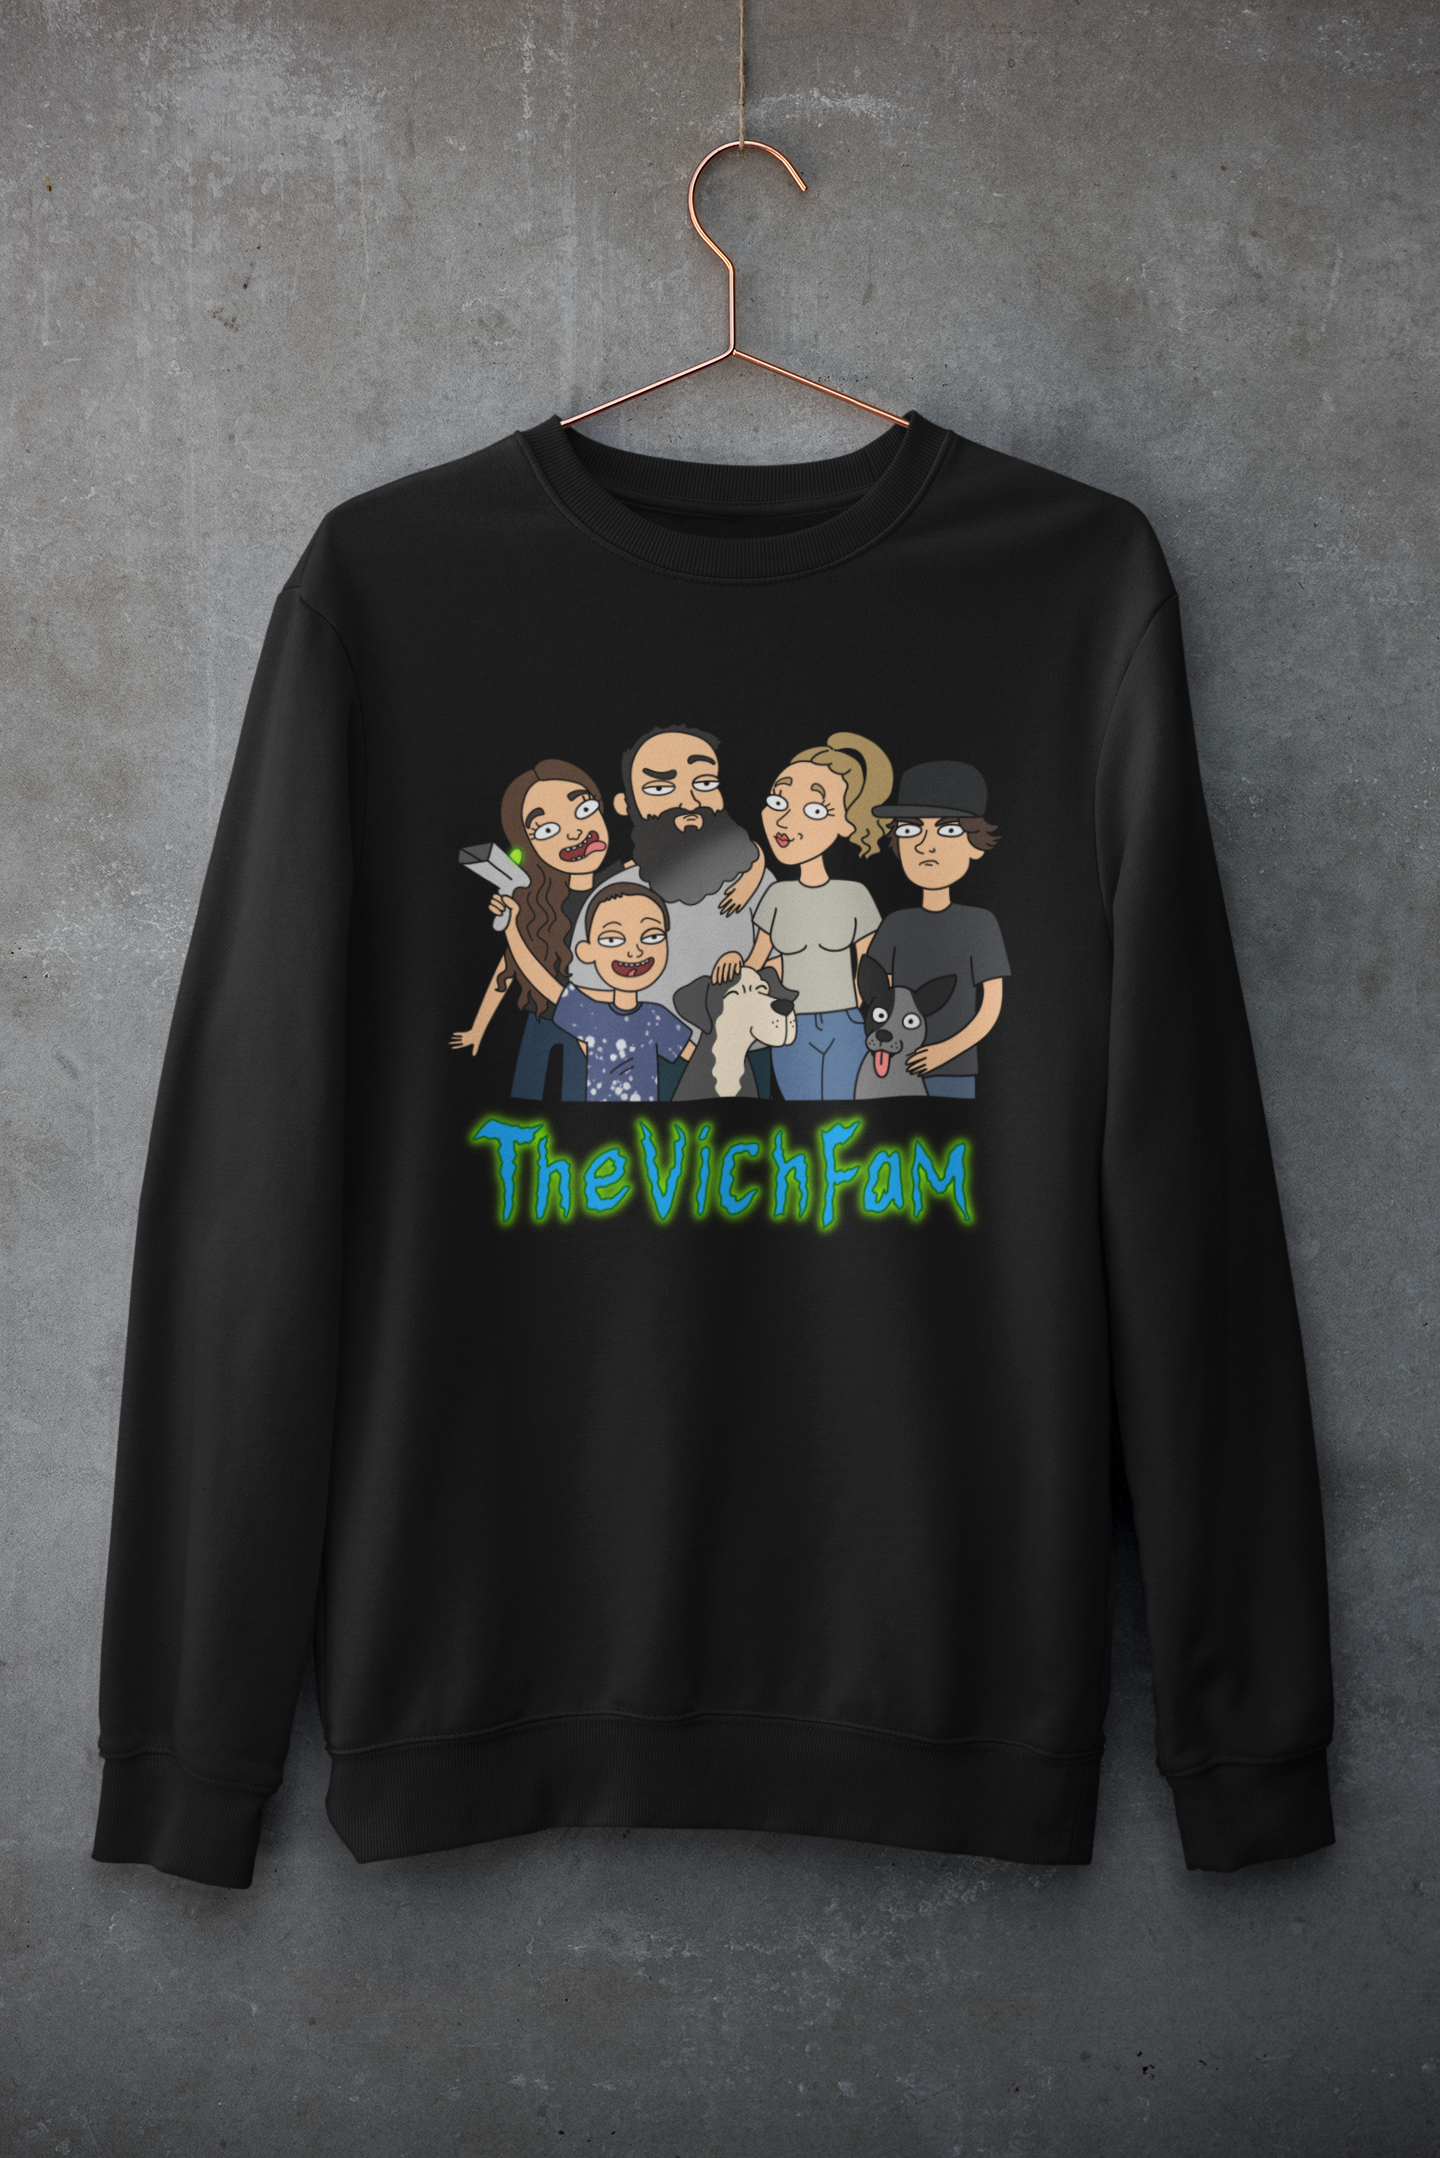 The Vich Fam Sweatshirt